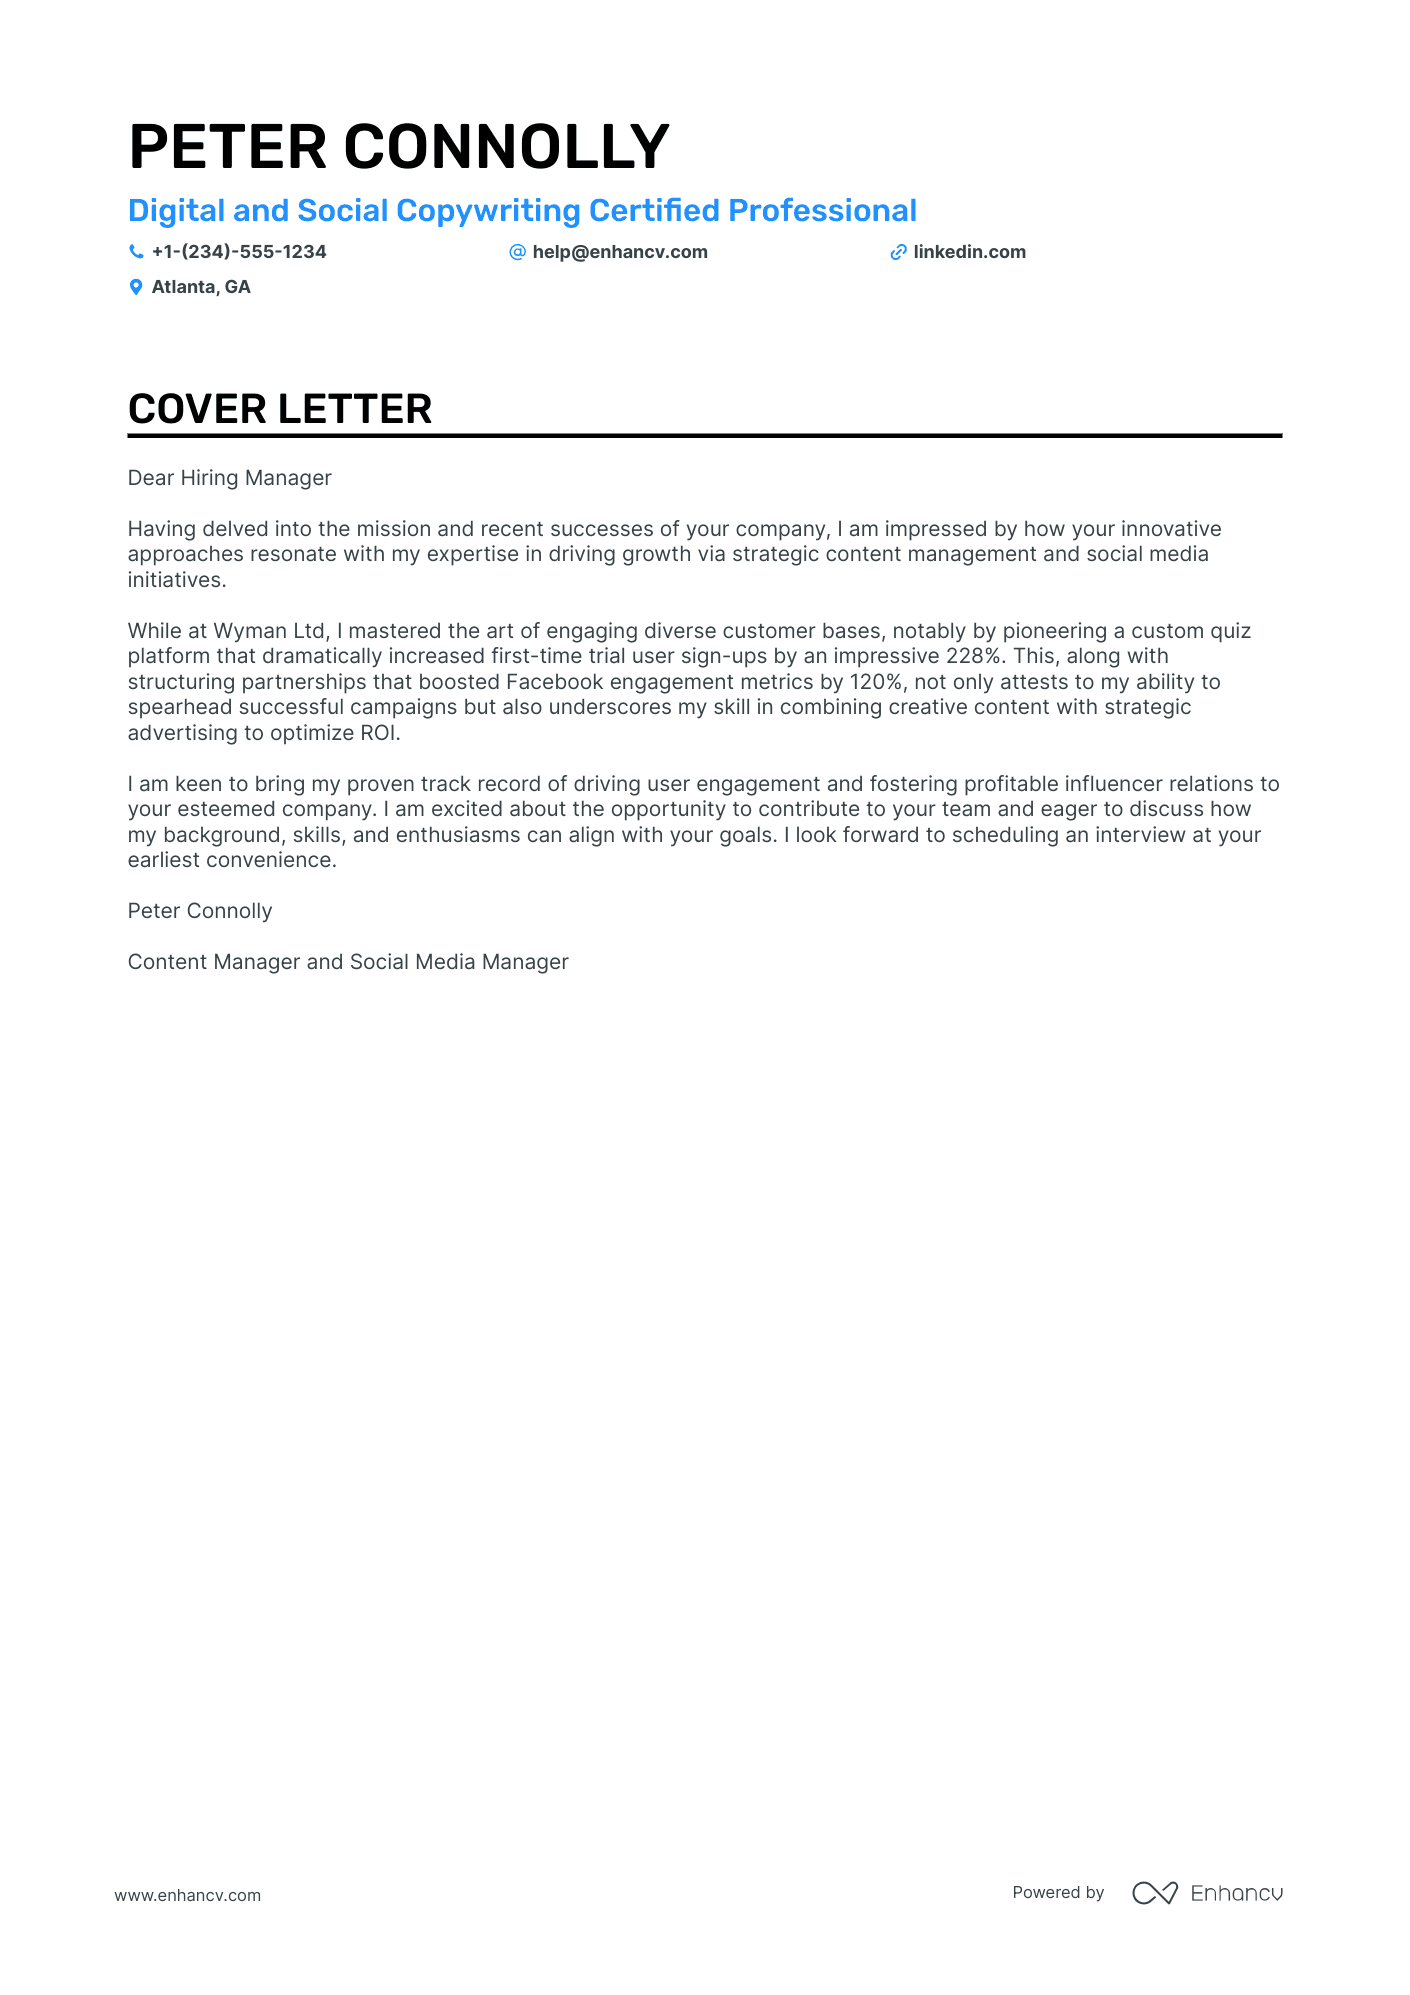 short cover letter for social media manager